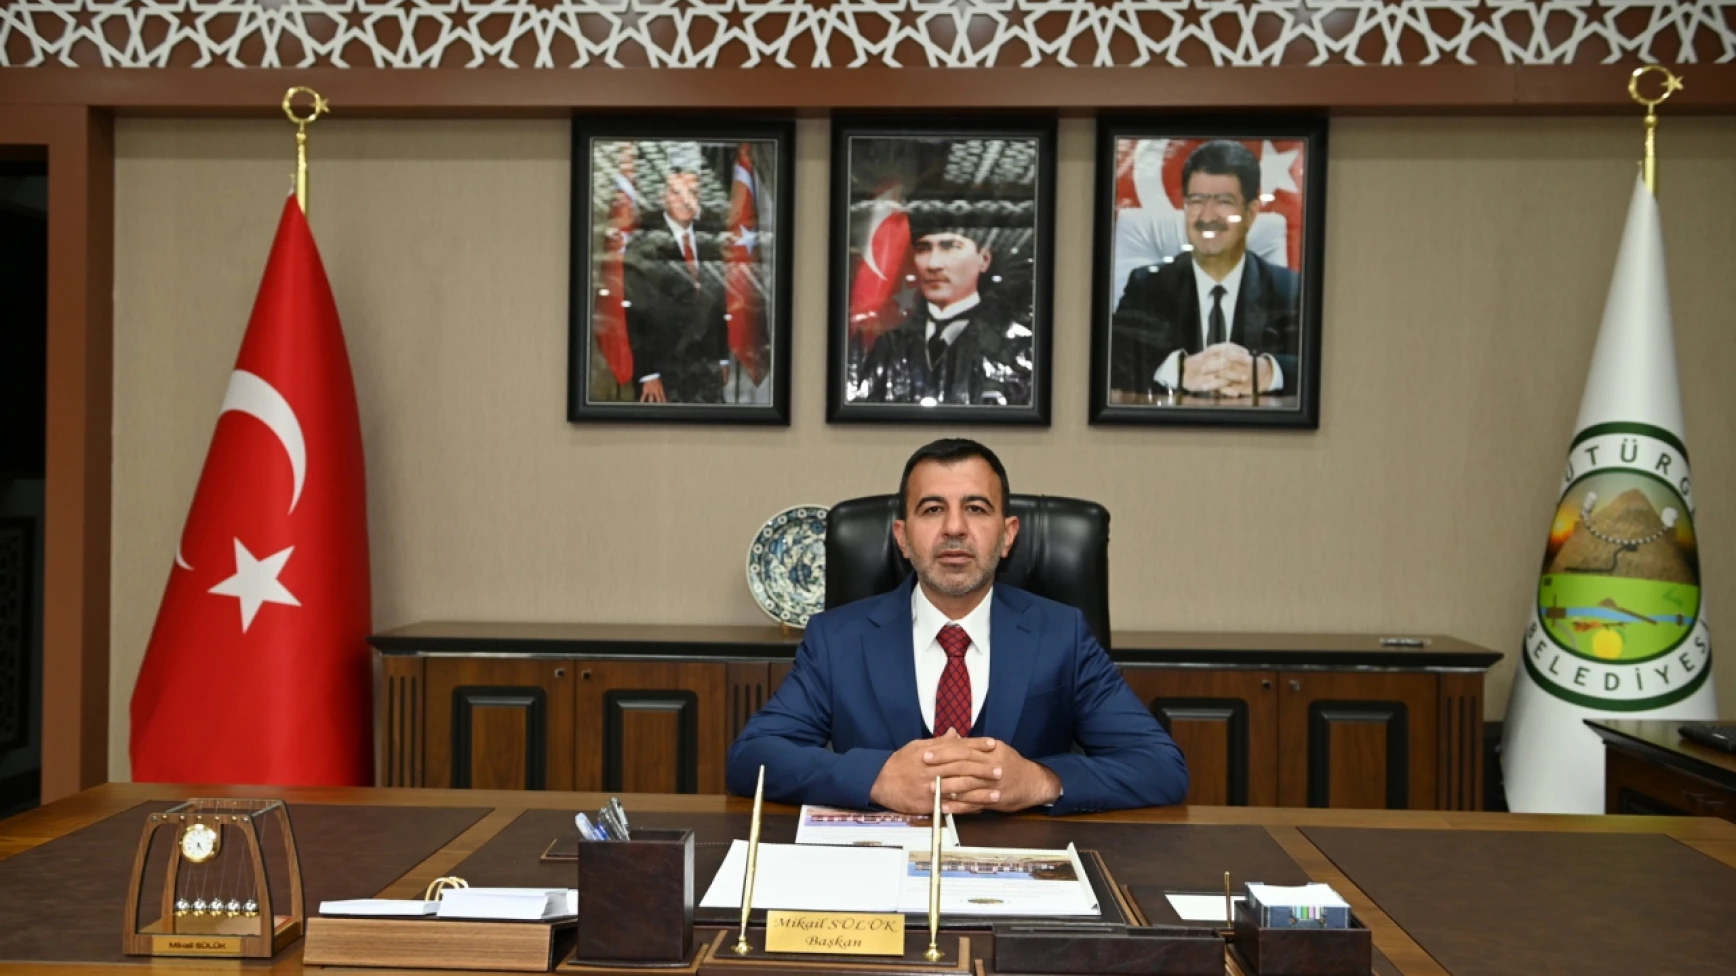 Pütürge Belediye Başkanı Mikail Sülük, belediyeye bağlı PÜRAŞ AŞ'de görevli zanlının işine son verildiğini bildirdi